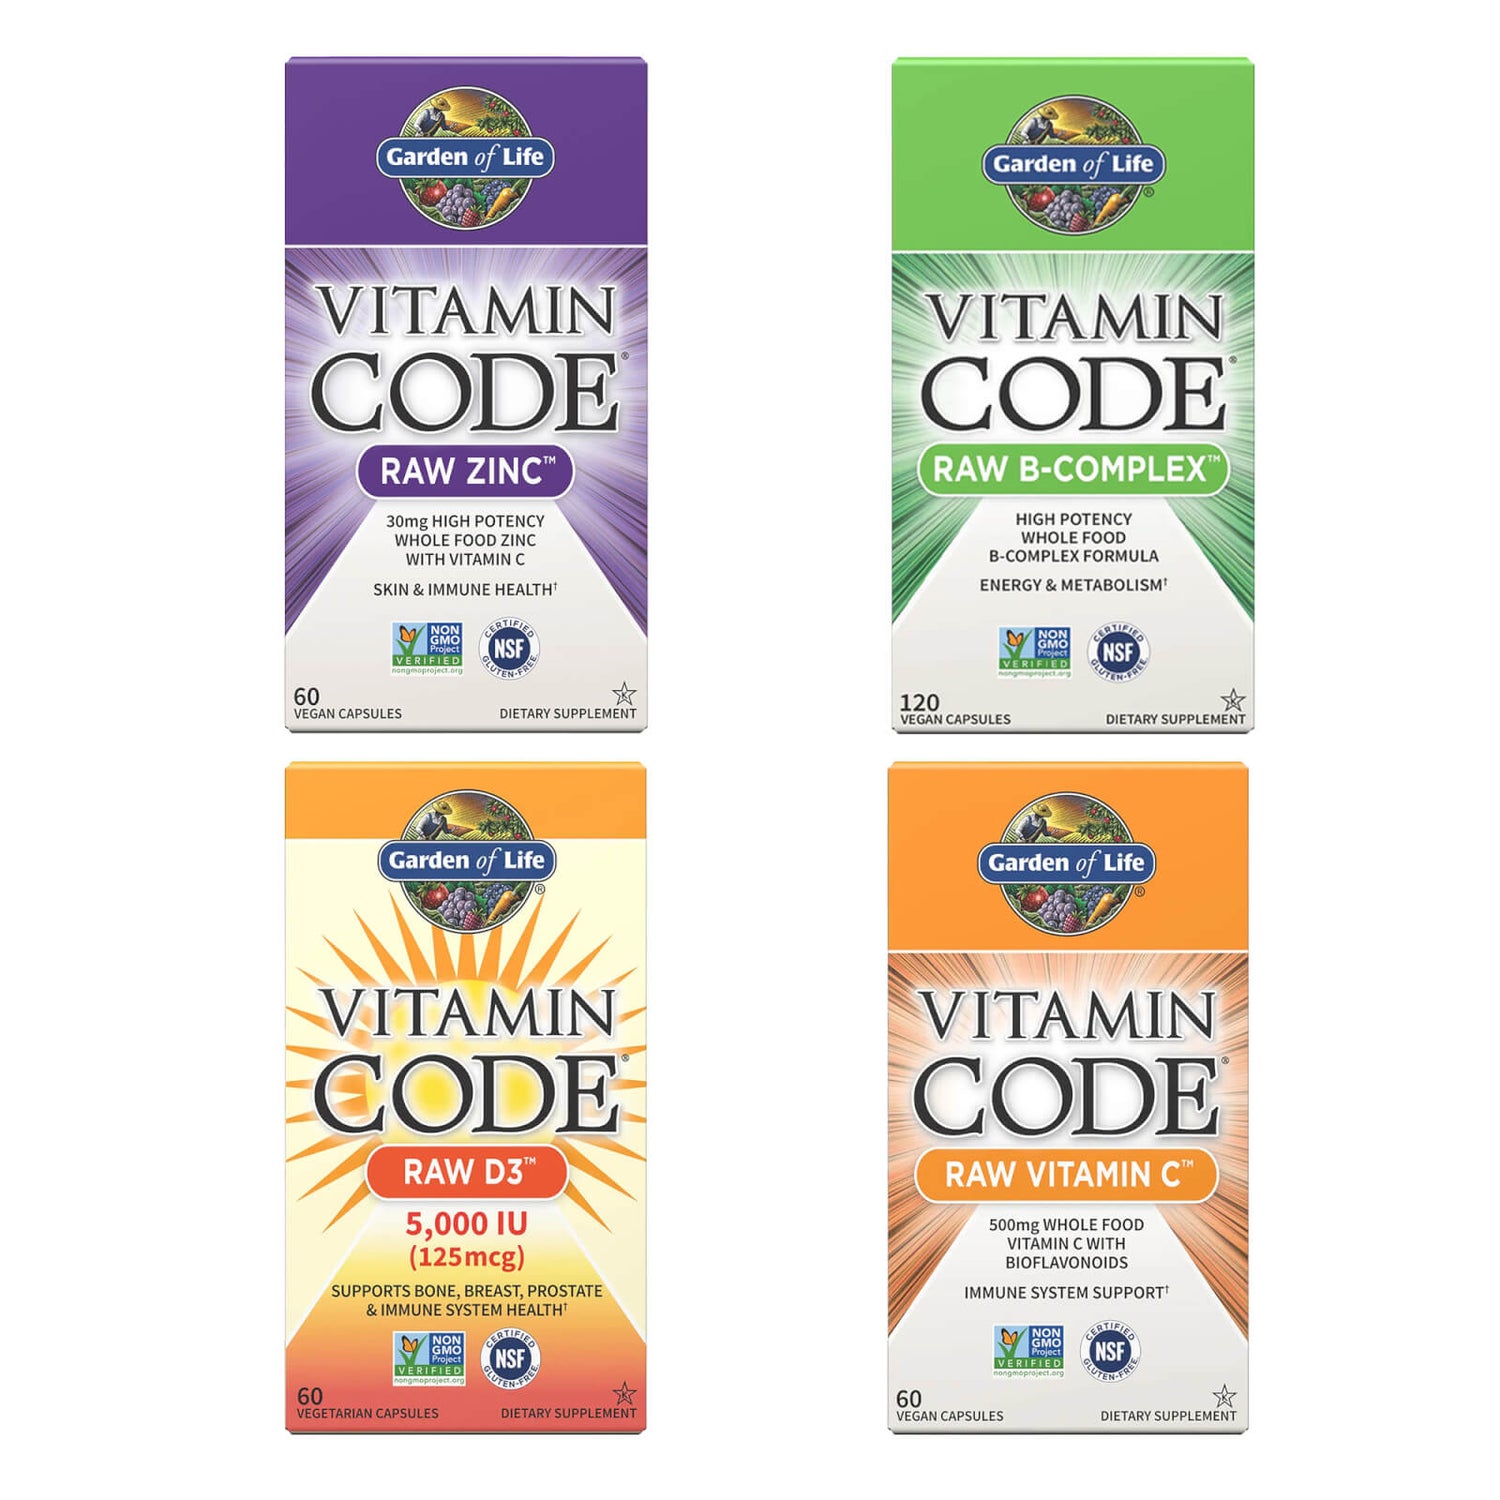 Vitamine Code x4 Bundel - Zink, Vitamine B-Complex, Vitamine C & Vitamine D